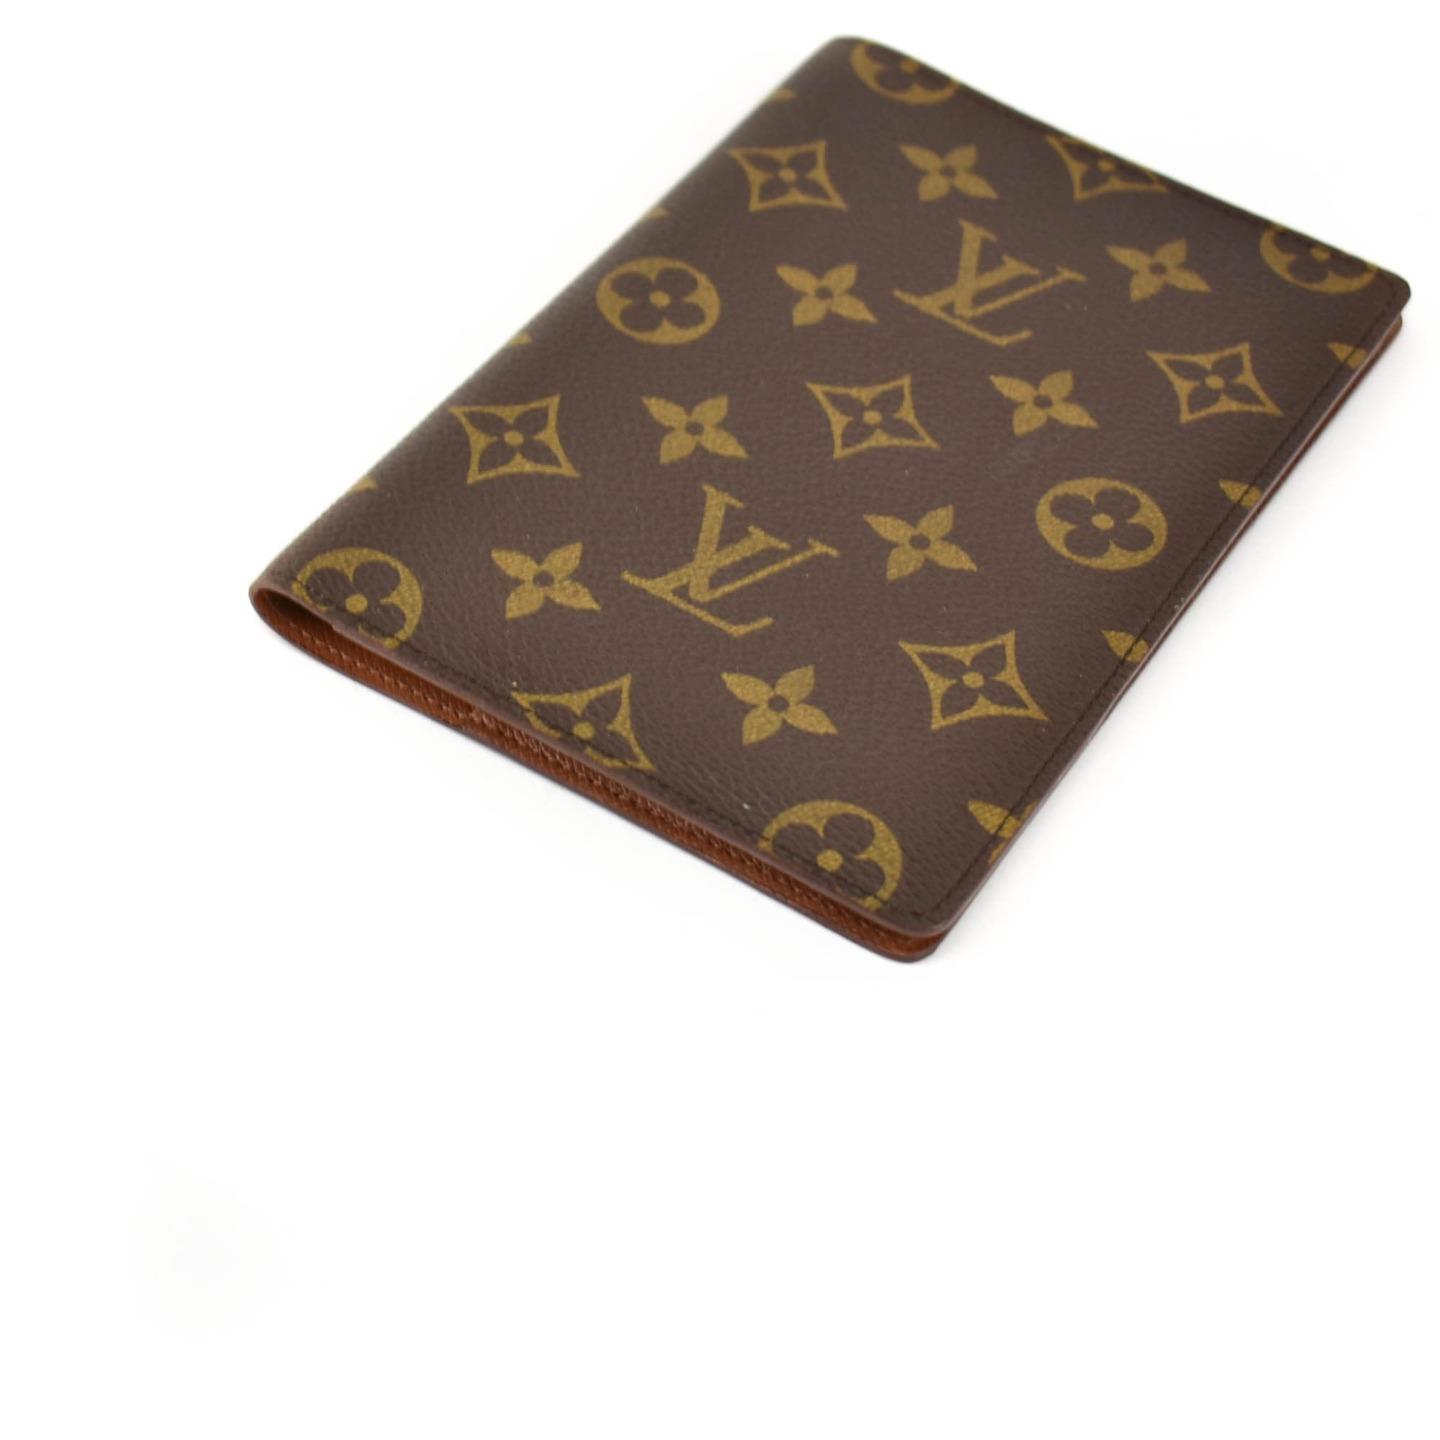 LOUIS VUITTON: Brown, Monogram &quot;LV&quot; & Leather Passport Wallet (vx) | eBay